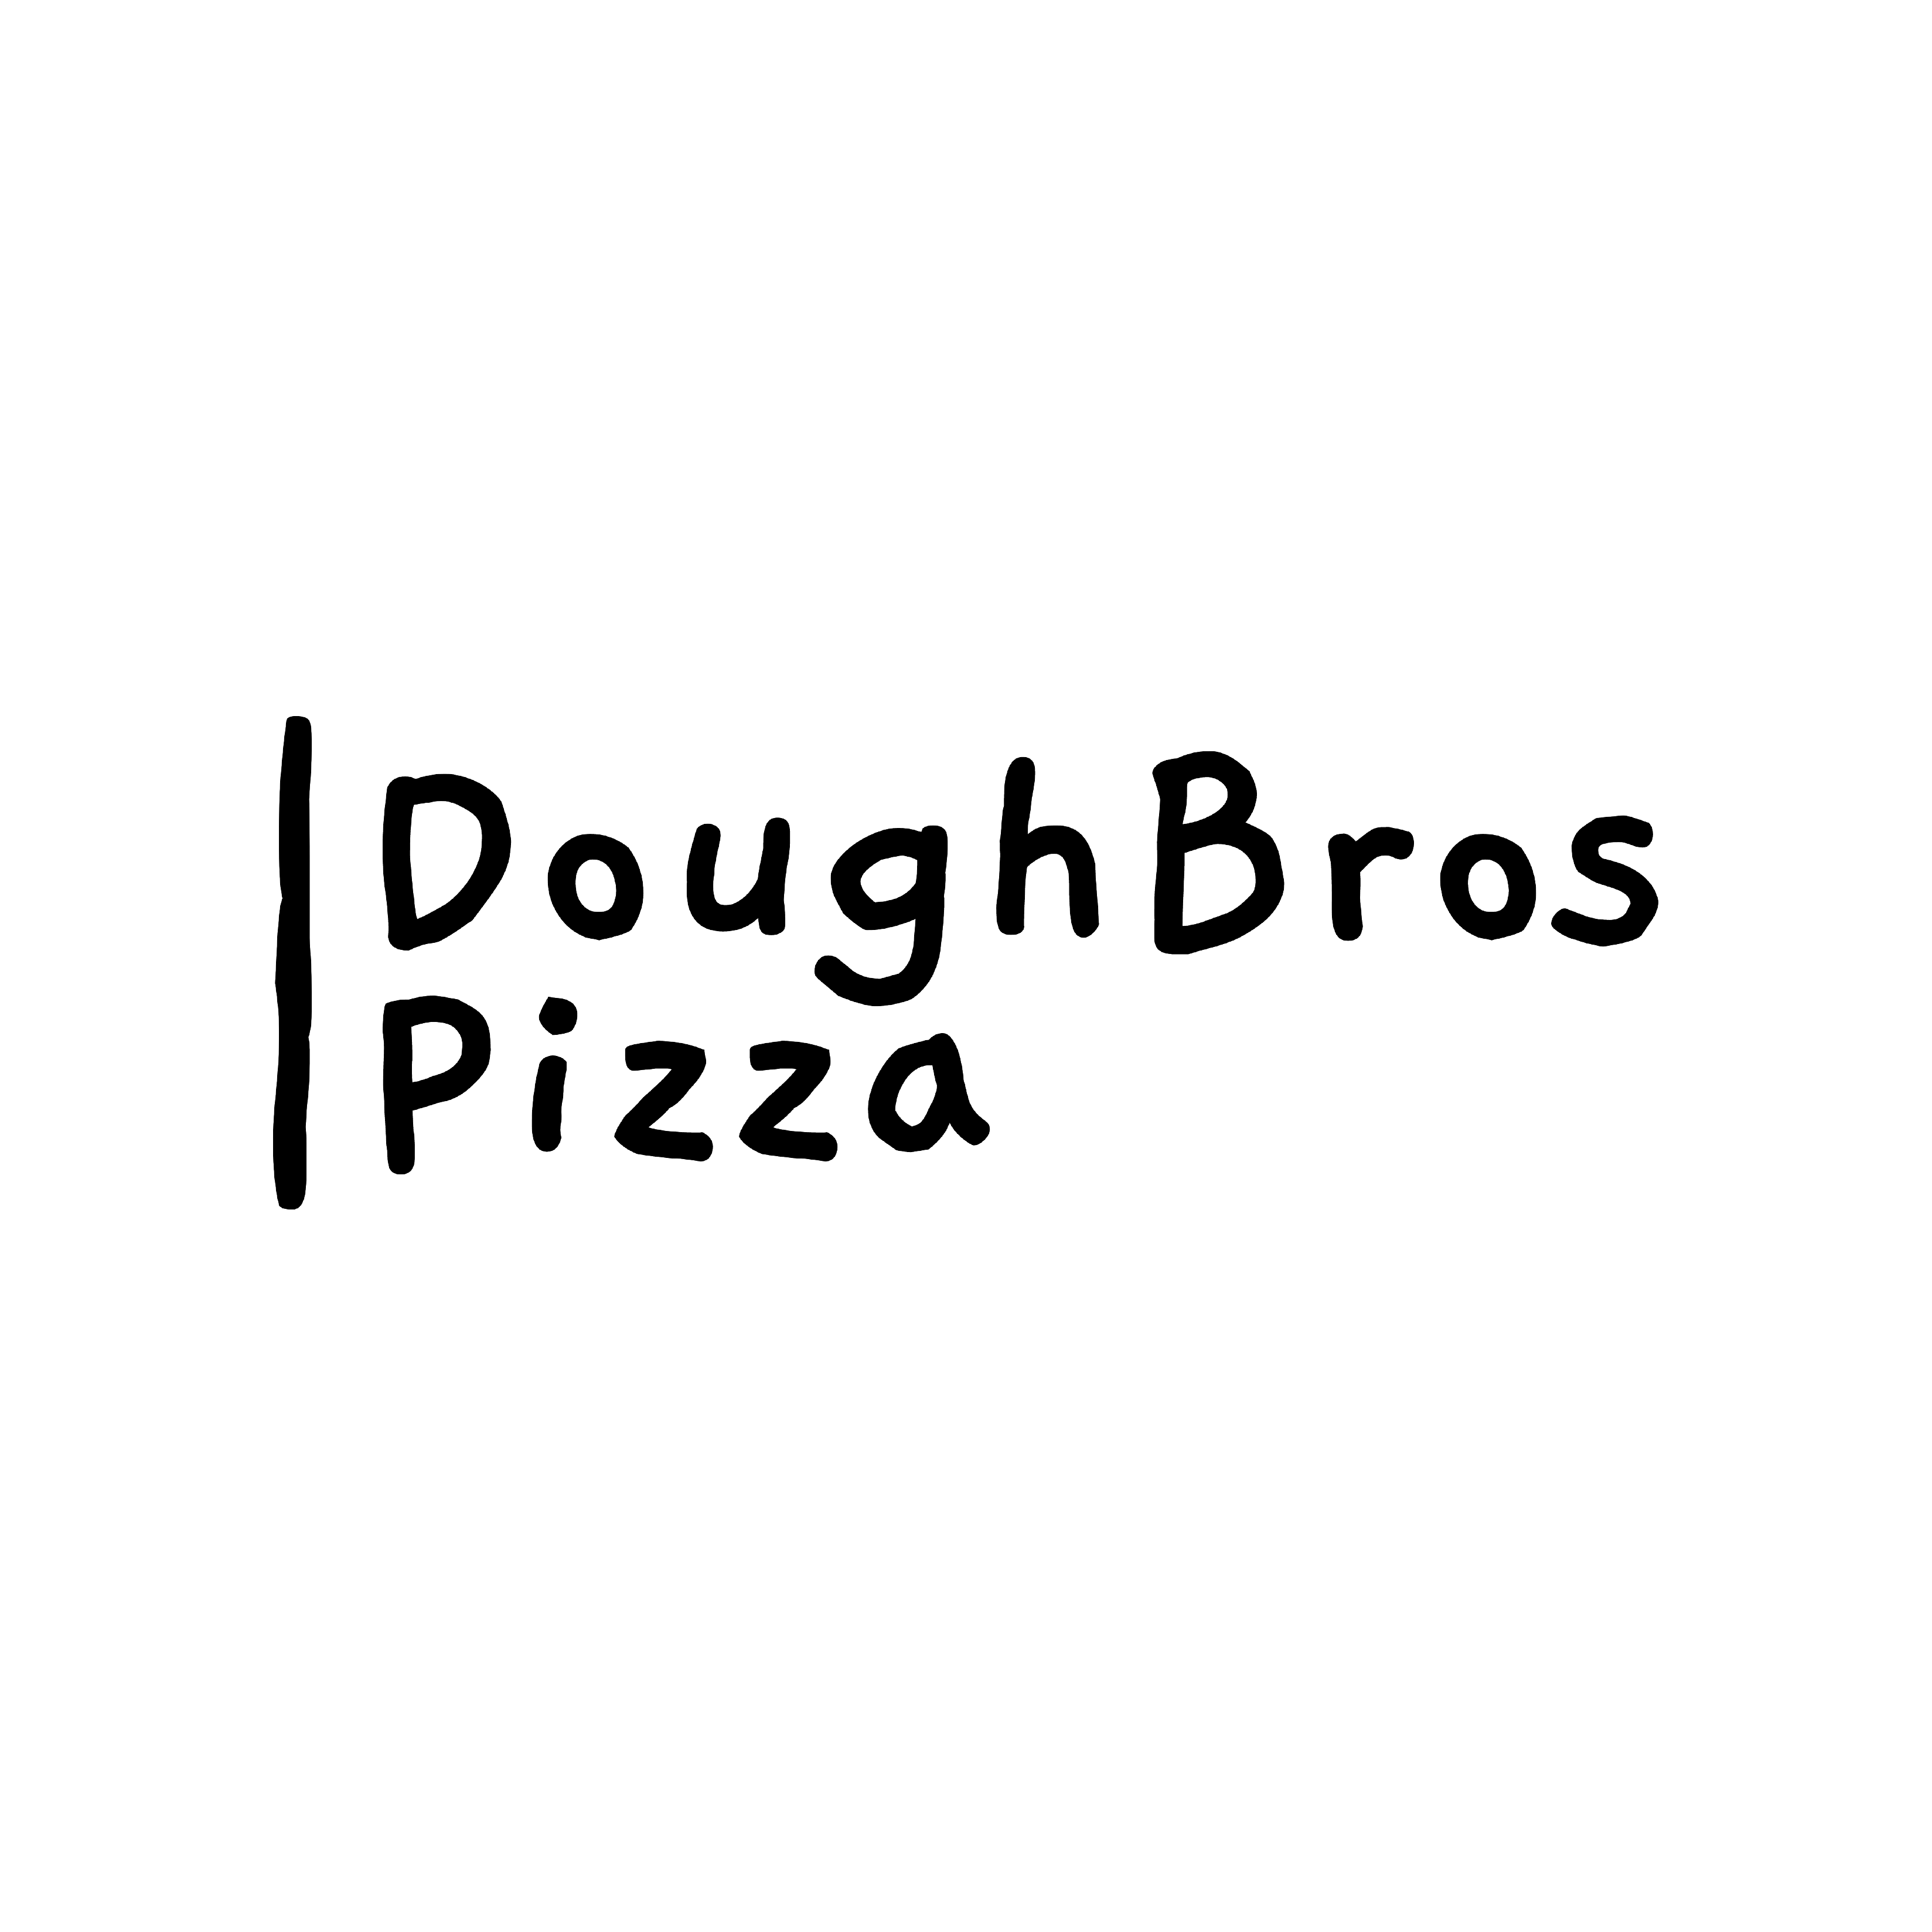 DoughBros Pizza app logo